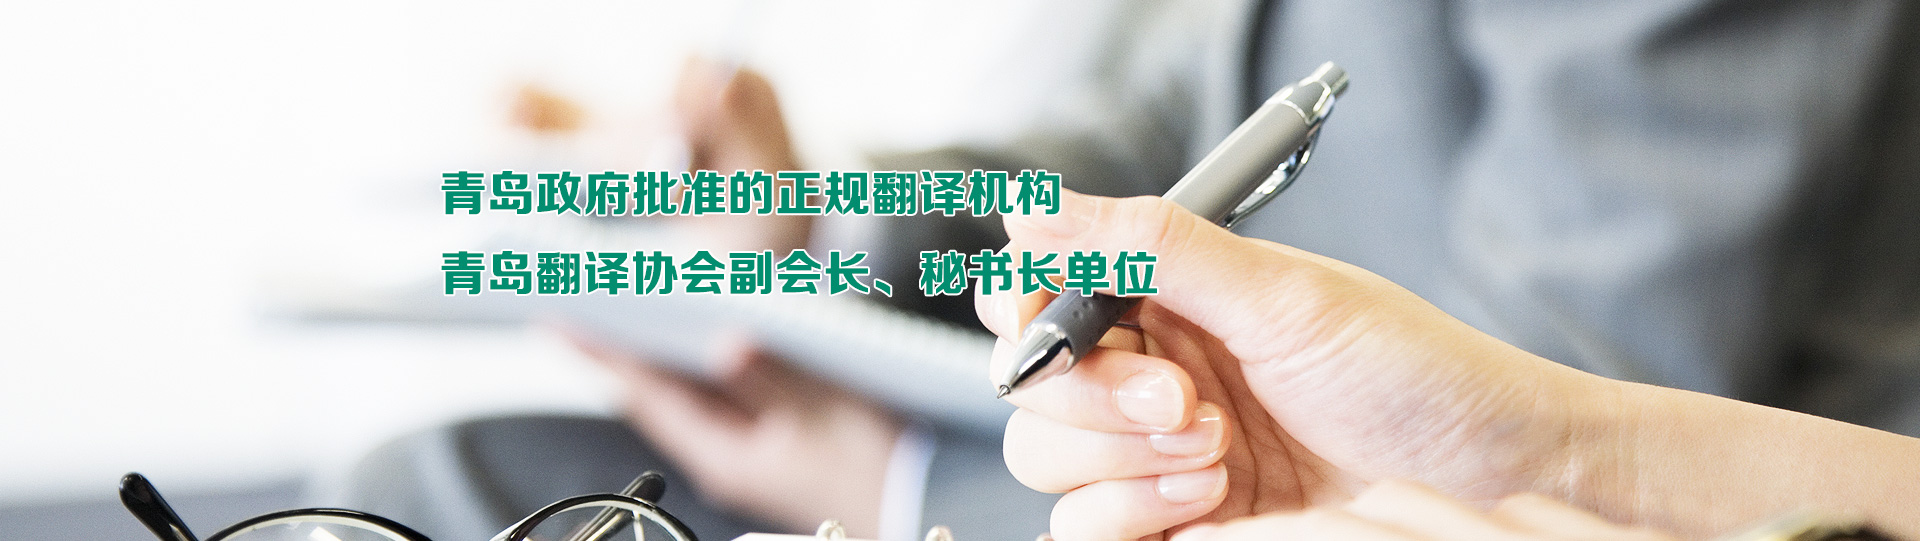 青岛市政府批准的正规翻译公司